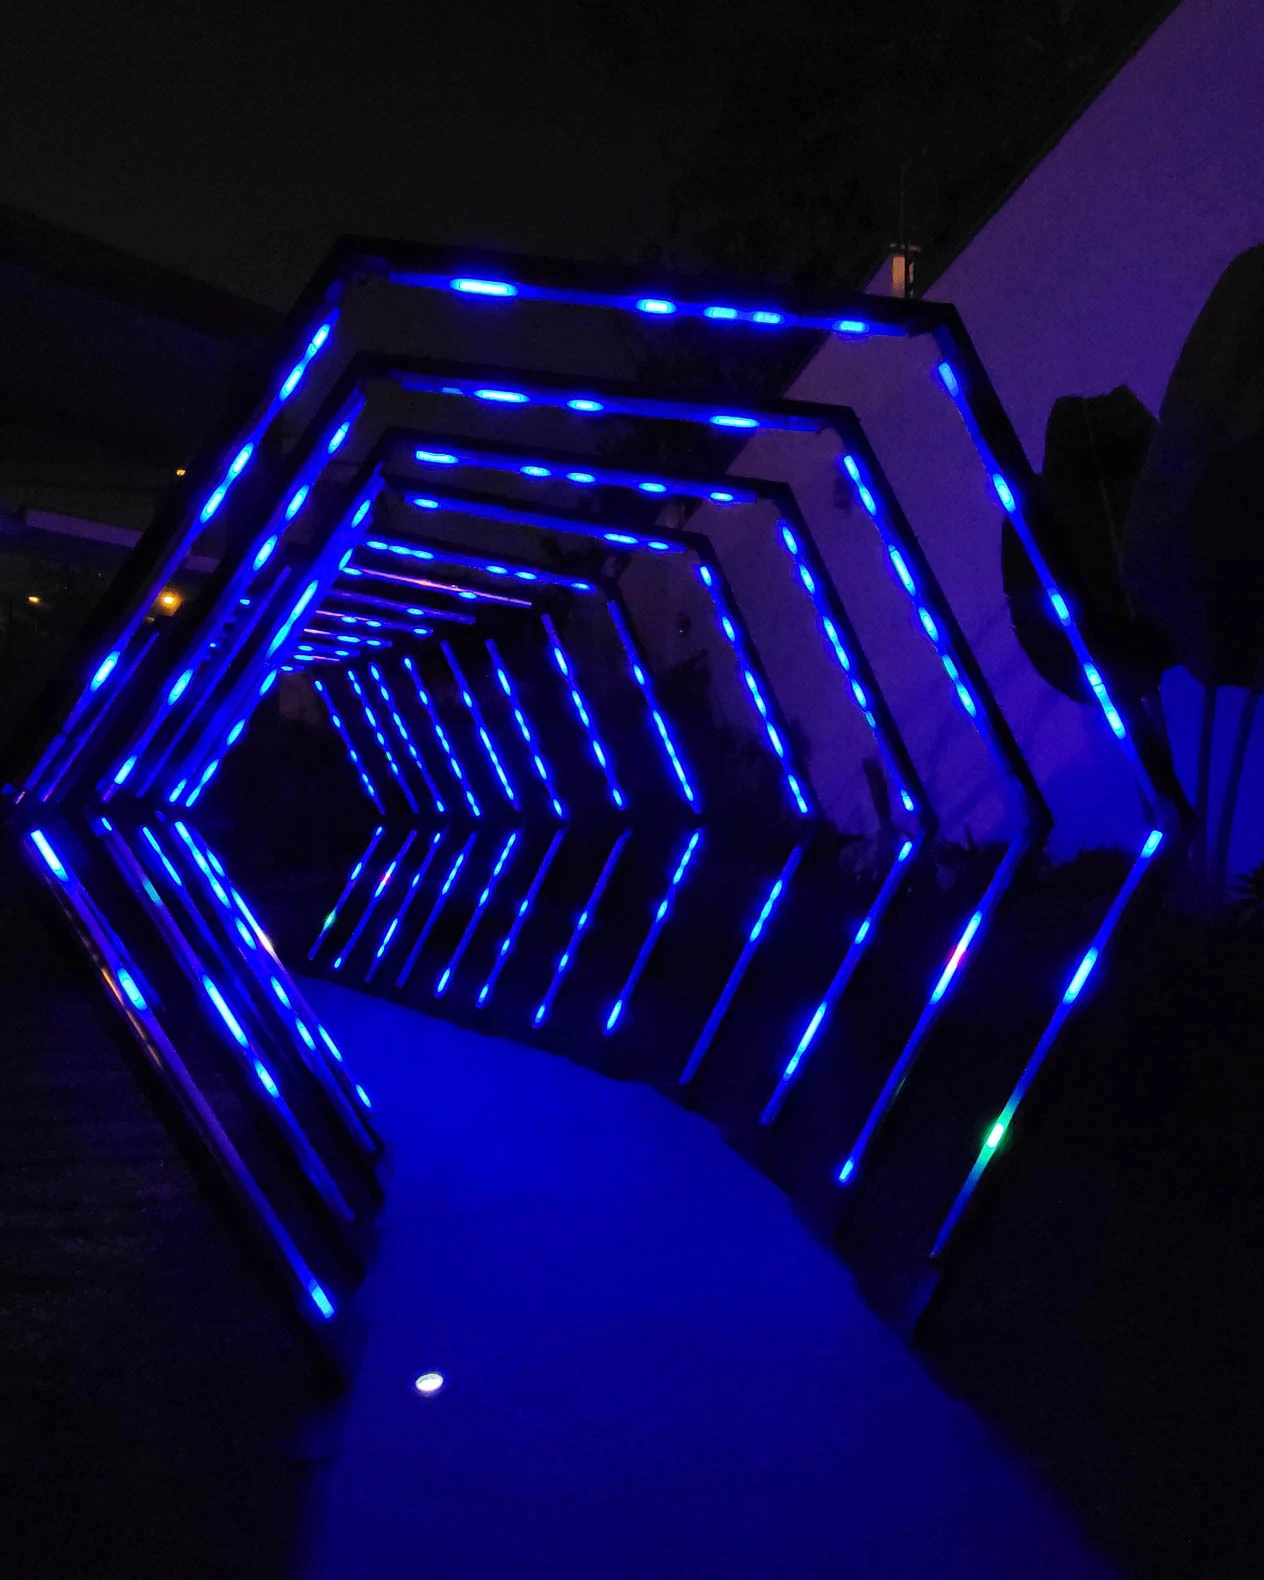 Túnel LED hexagonal azul: Iluminación impresionante en el camino hacia una casa de eventos, creando un ambiente cautivador. - Túnel hexagonal led - scratch perú.